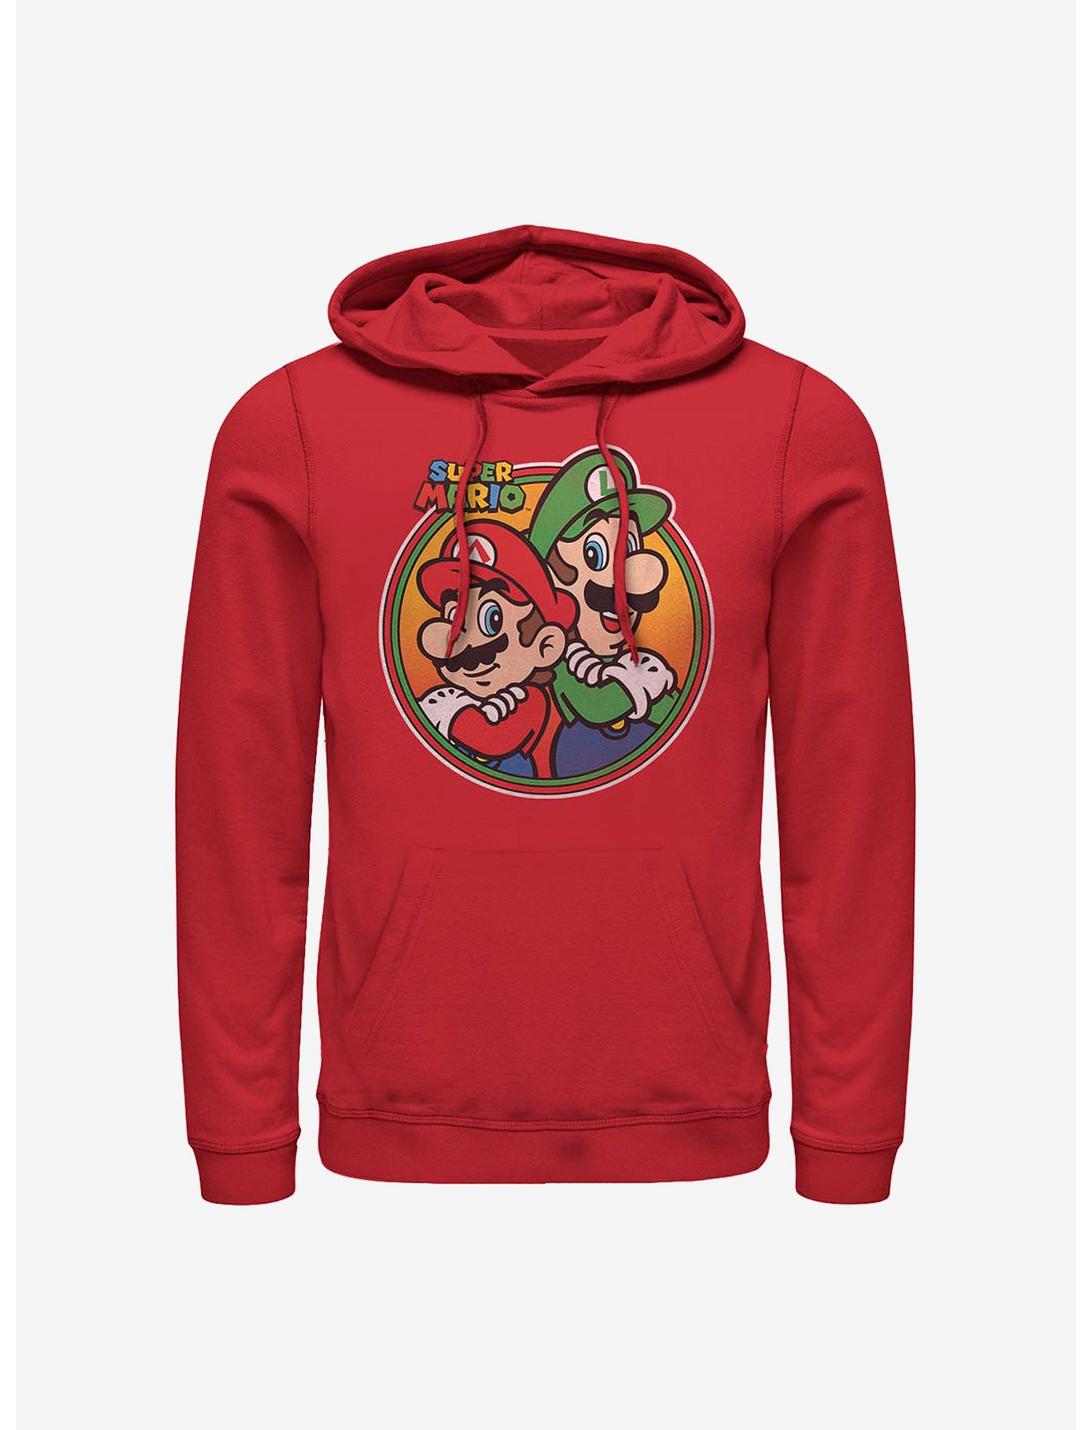 Nintendo Mario Brothers Hoodie, RED, hi-res